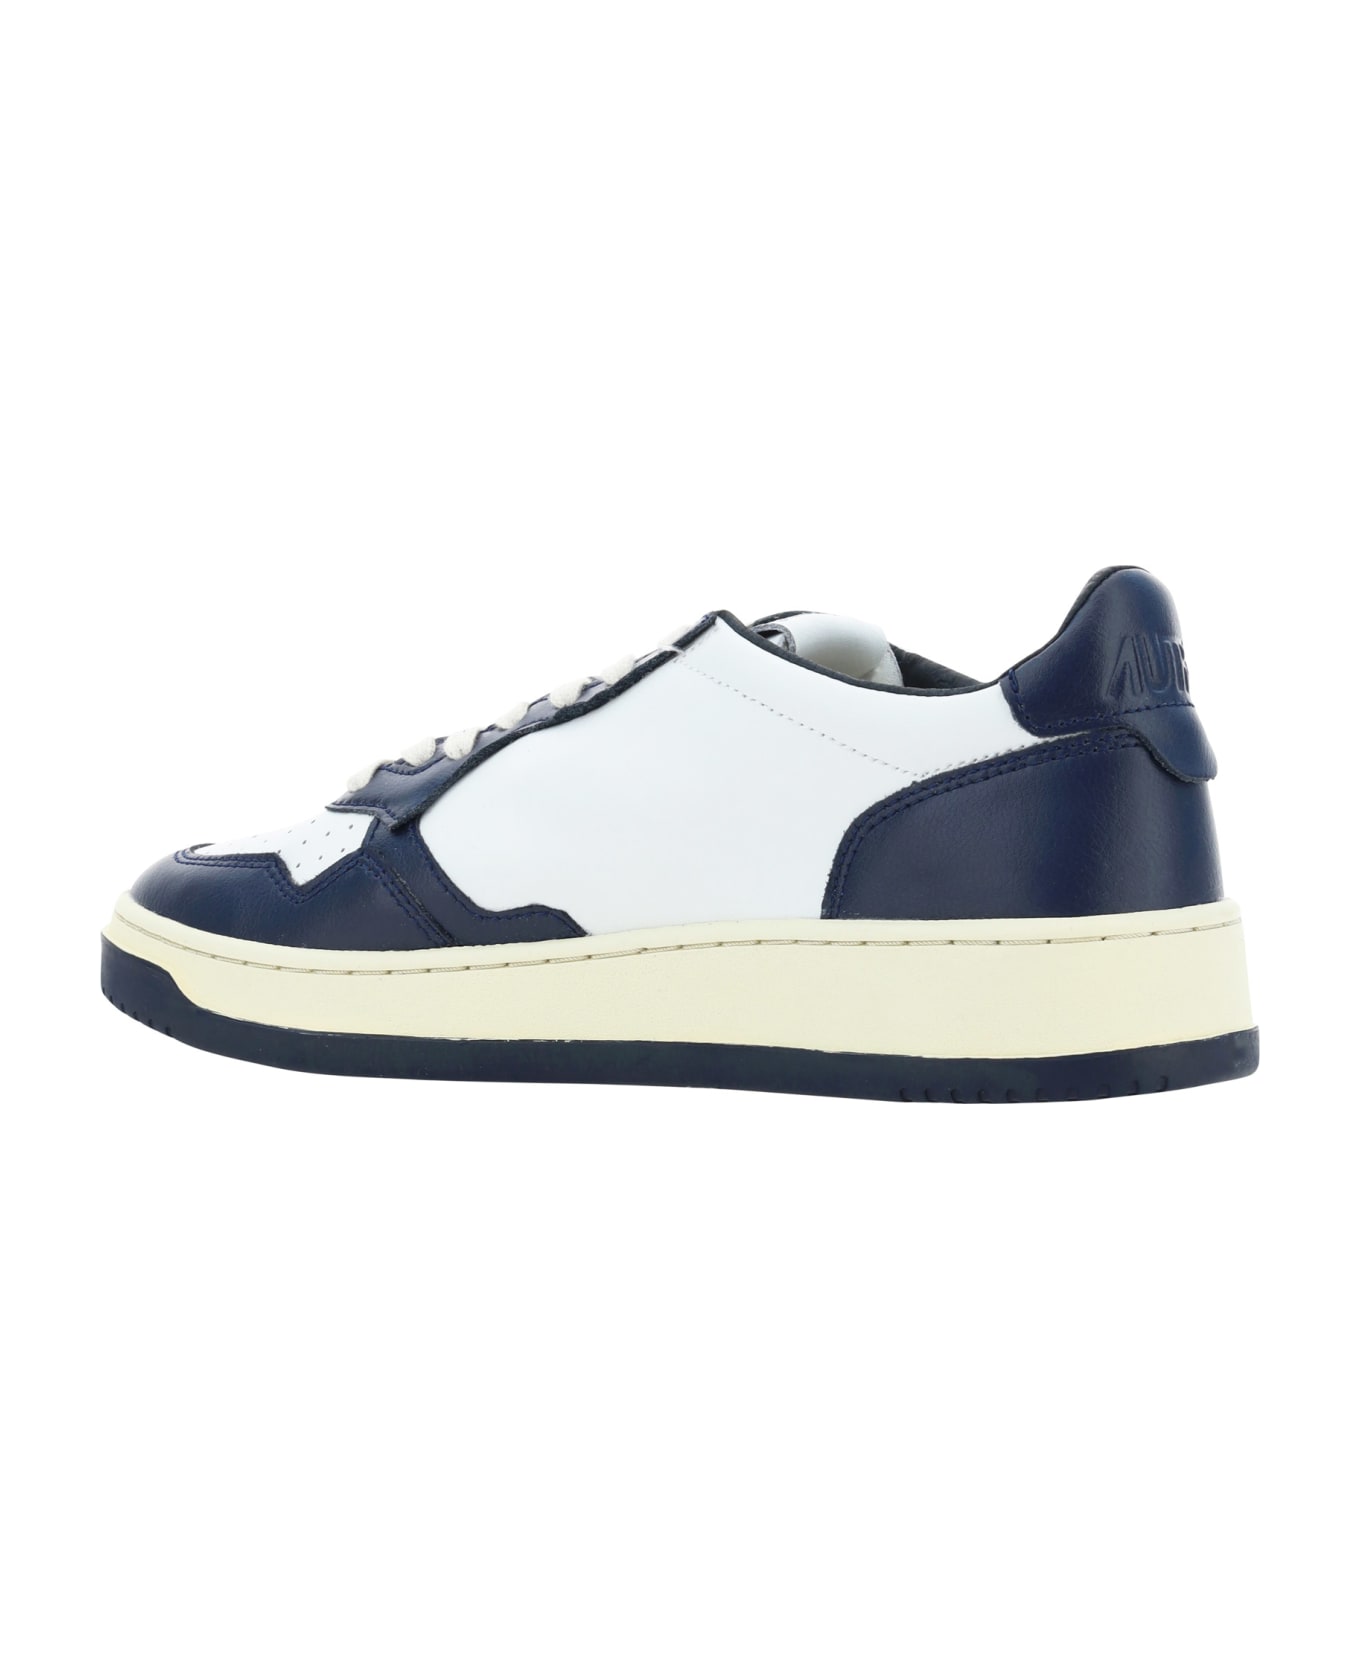 Autry Medialist Low Sneakers - Bianco/blu スニーカー